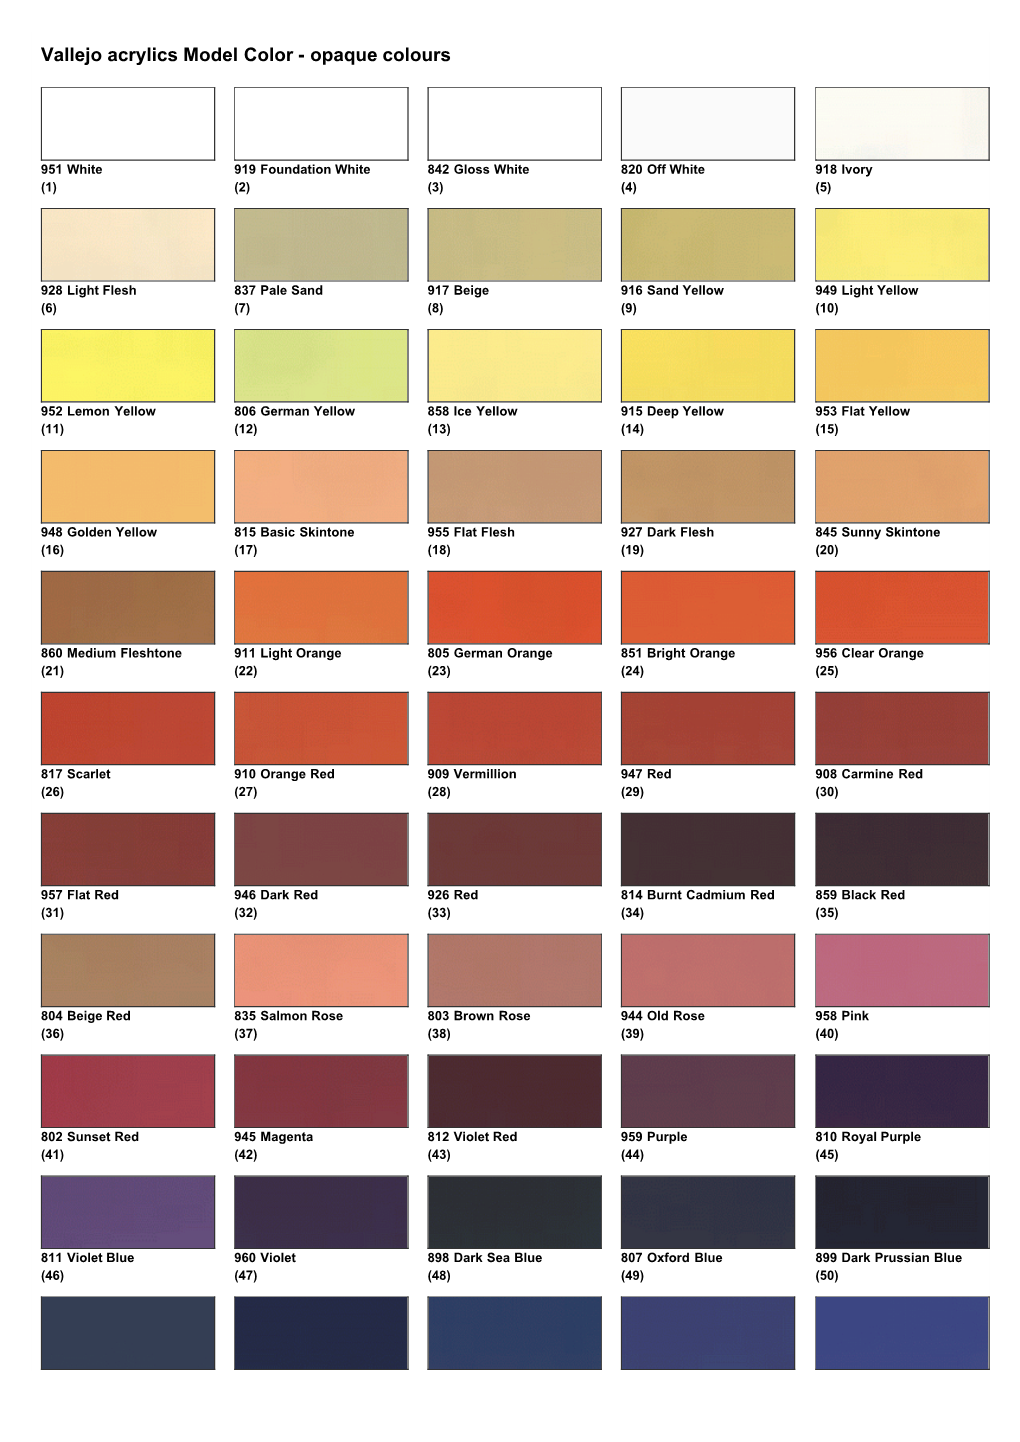 Vallejo Colour Chart - DocsLib